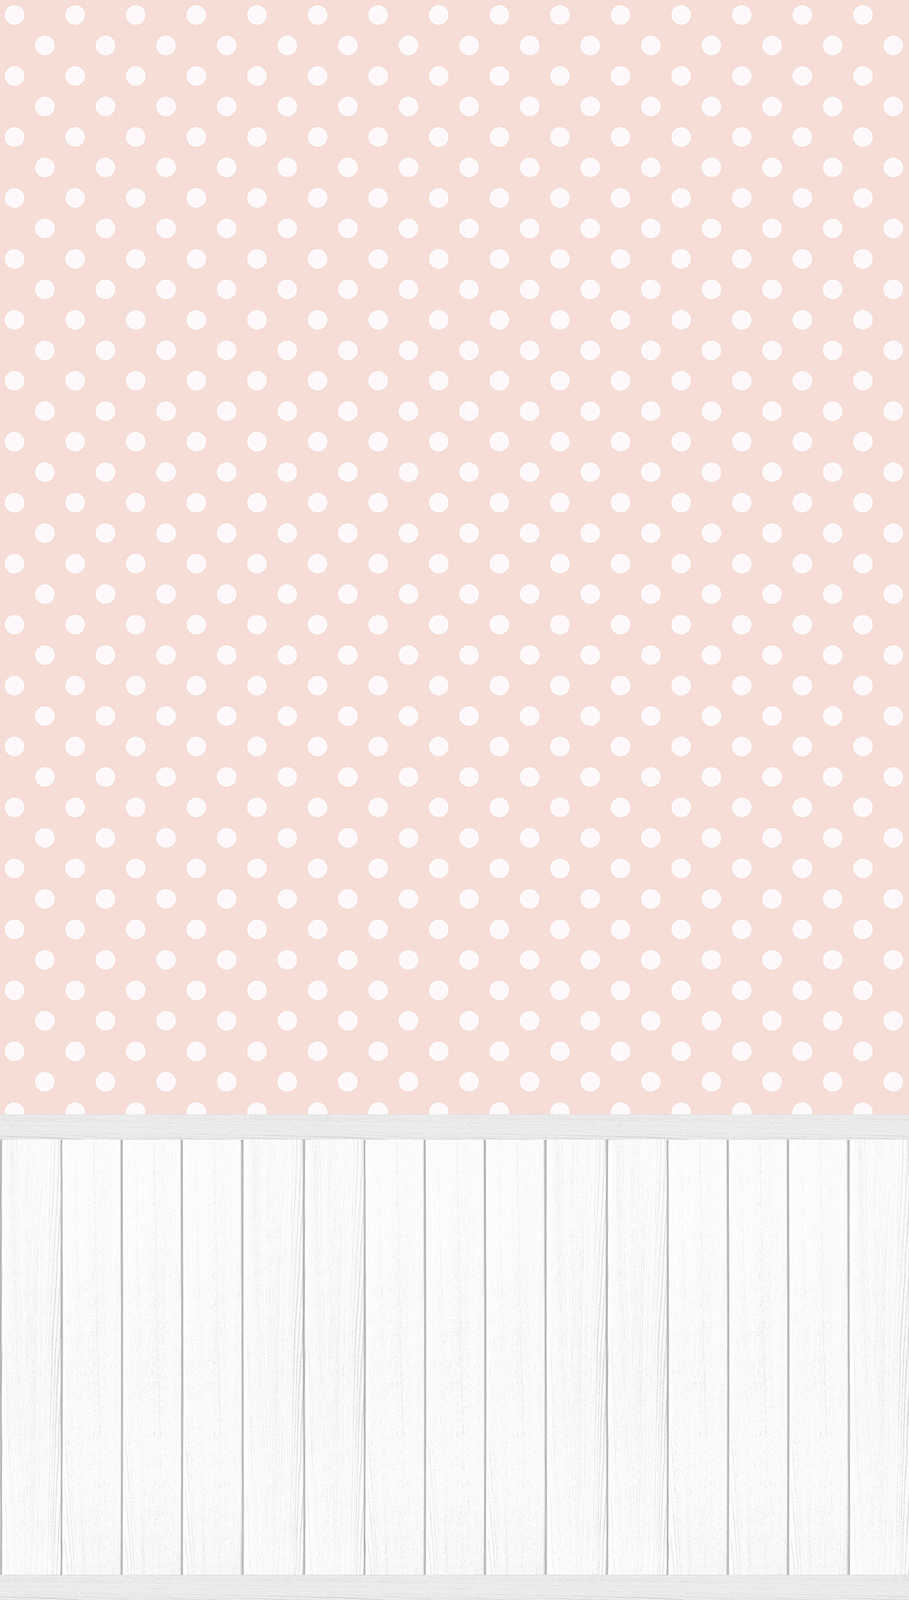             Papel pintado motivo no tejido con cenefa de zócalo efecto madera y motivo de puntos - blanco, gris, rosa
        